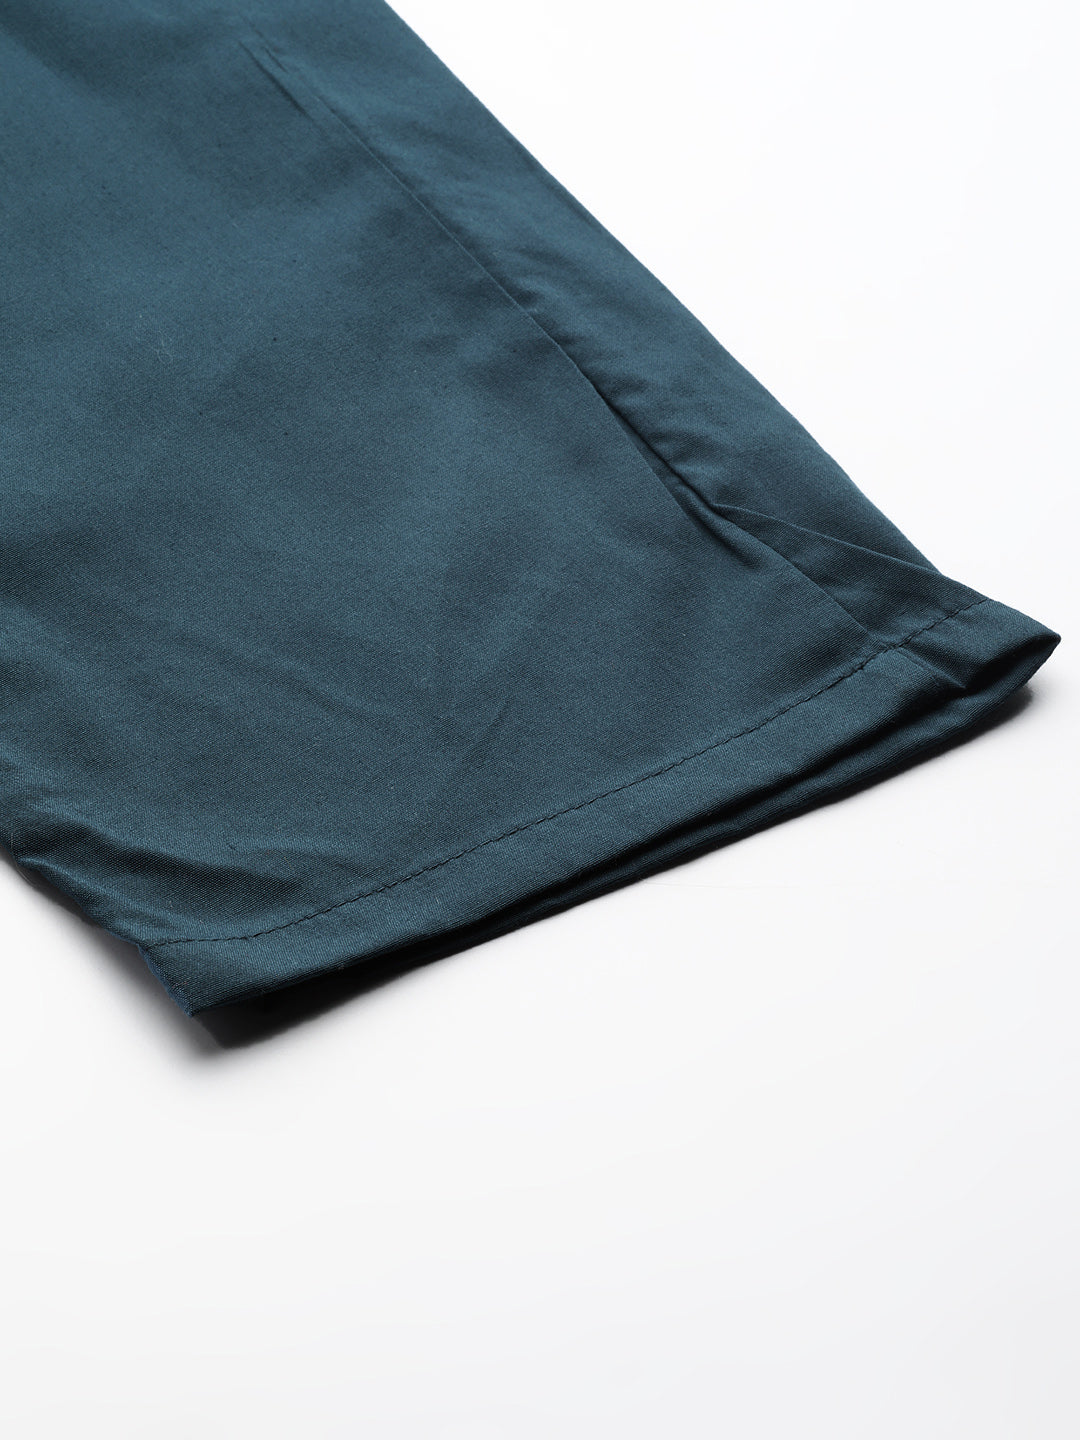 Men's Cotton Teal Blue Solid Track Pant  - Sojanya